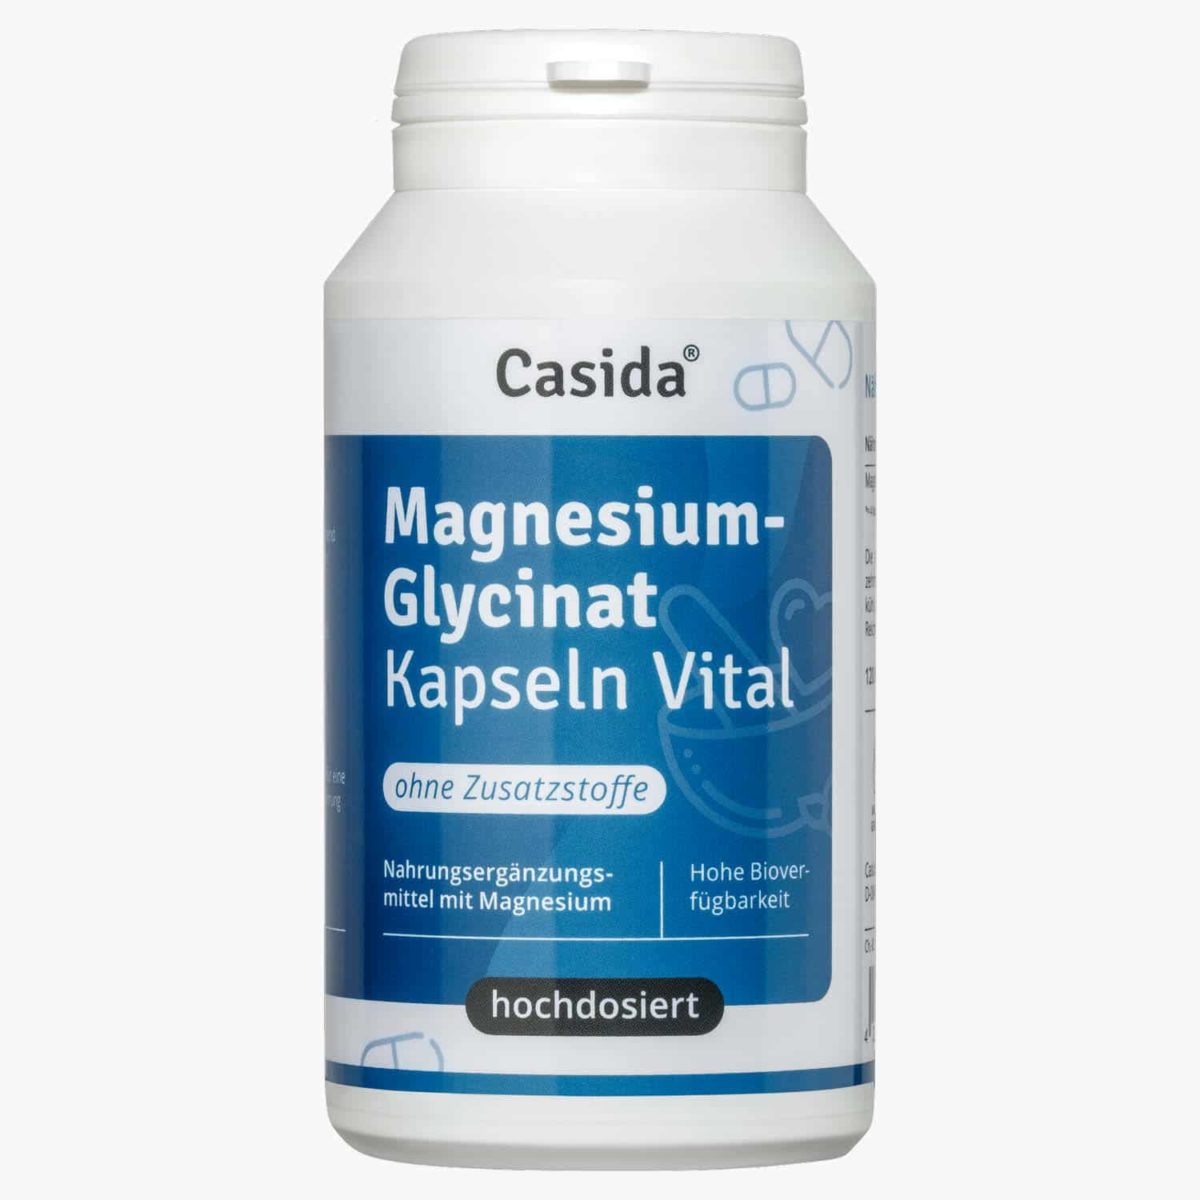 Magnesium Glycinat Kapseln Vital